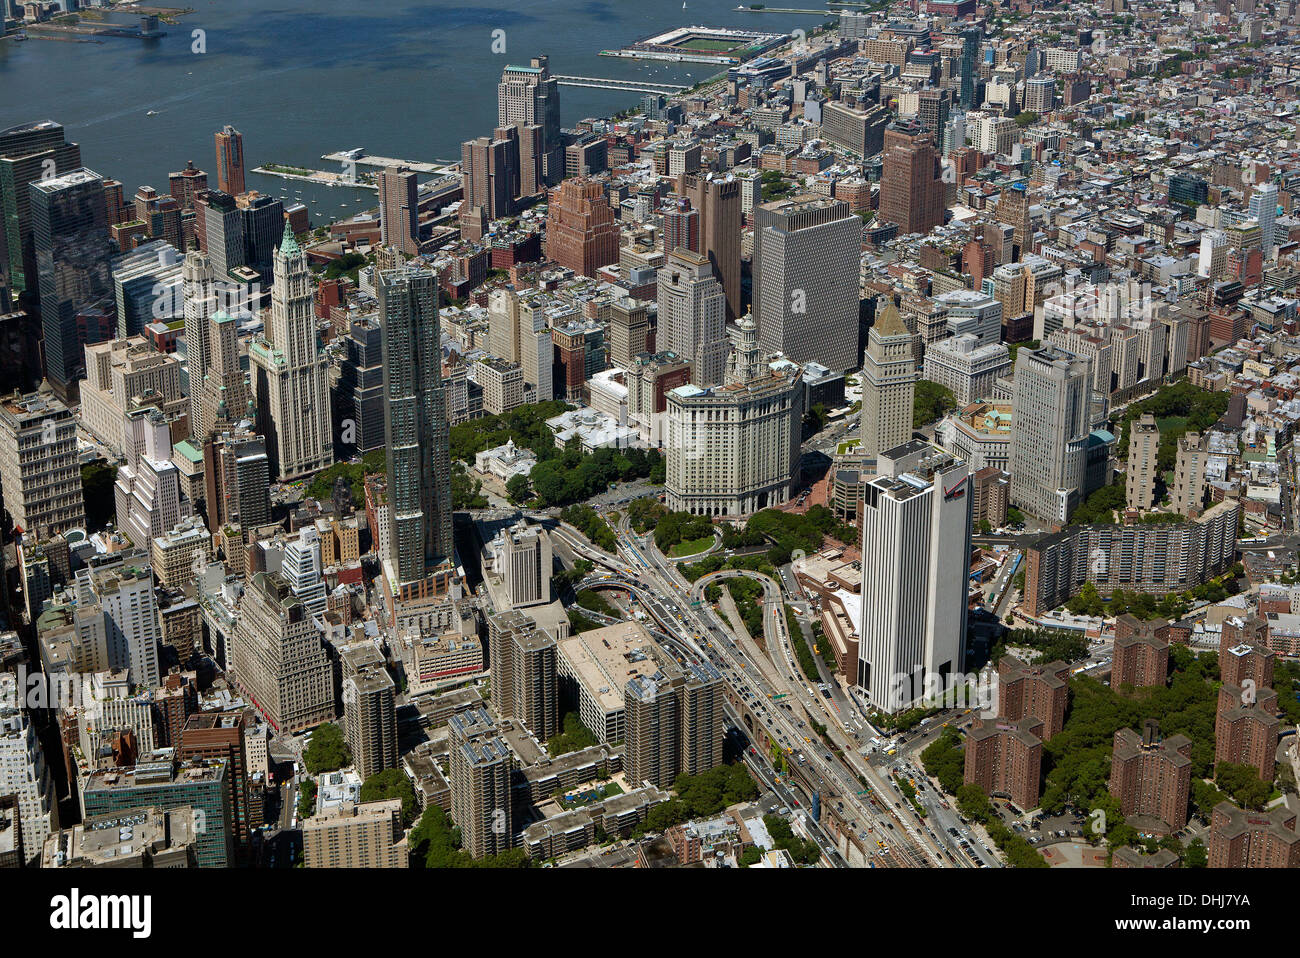 Photographie aérienne de ville et édifice municipal, Civic Center, Manhattan, New York City Banque D'Images